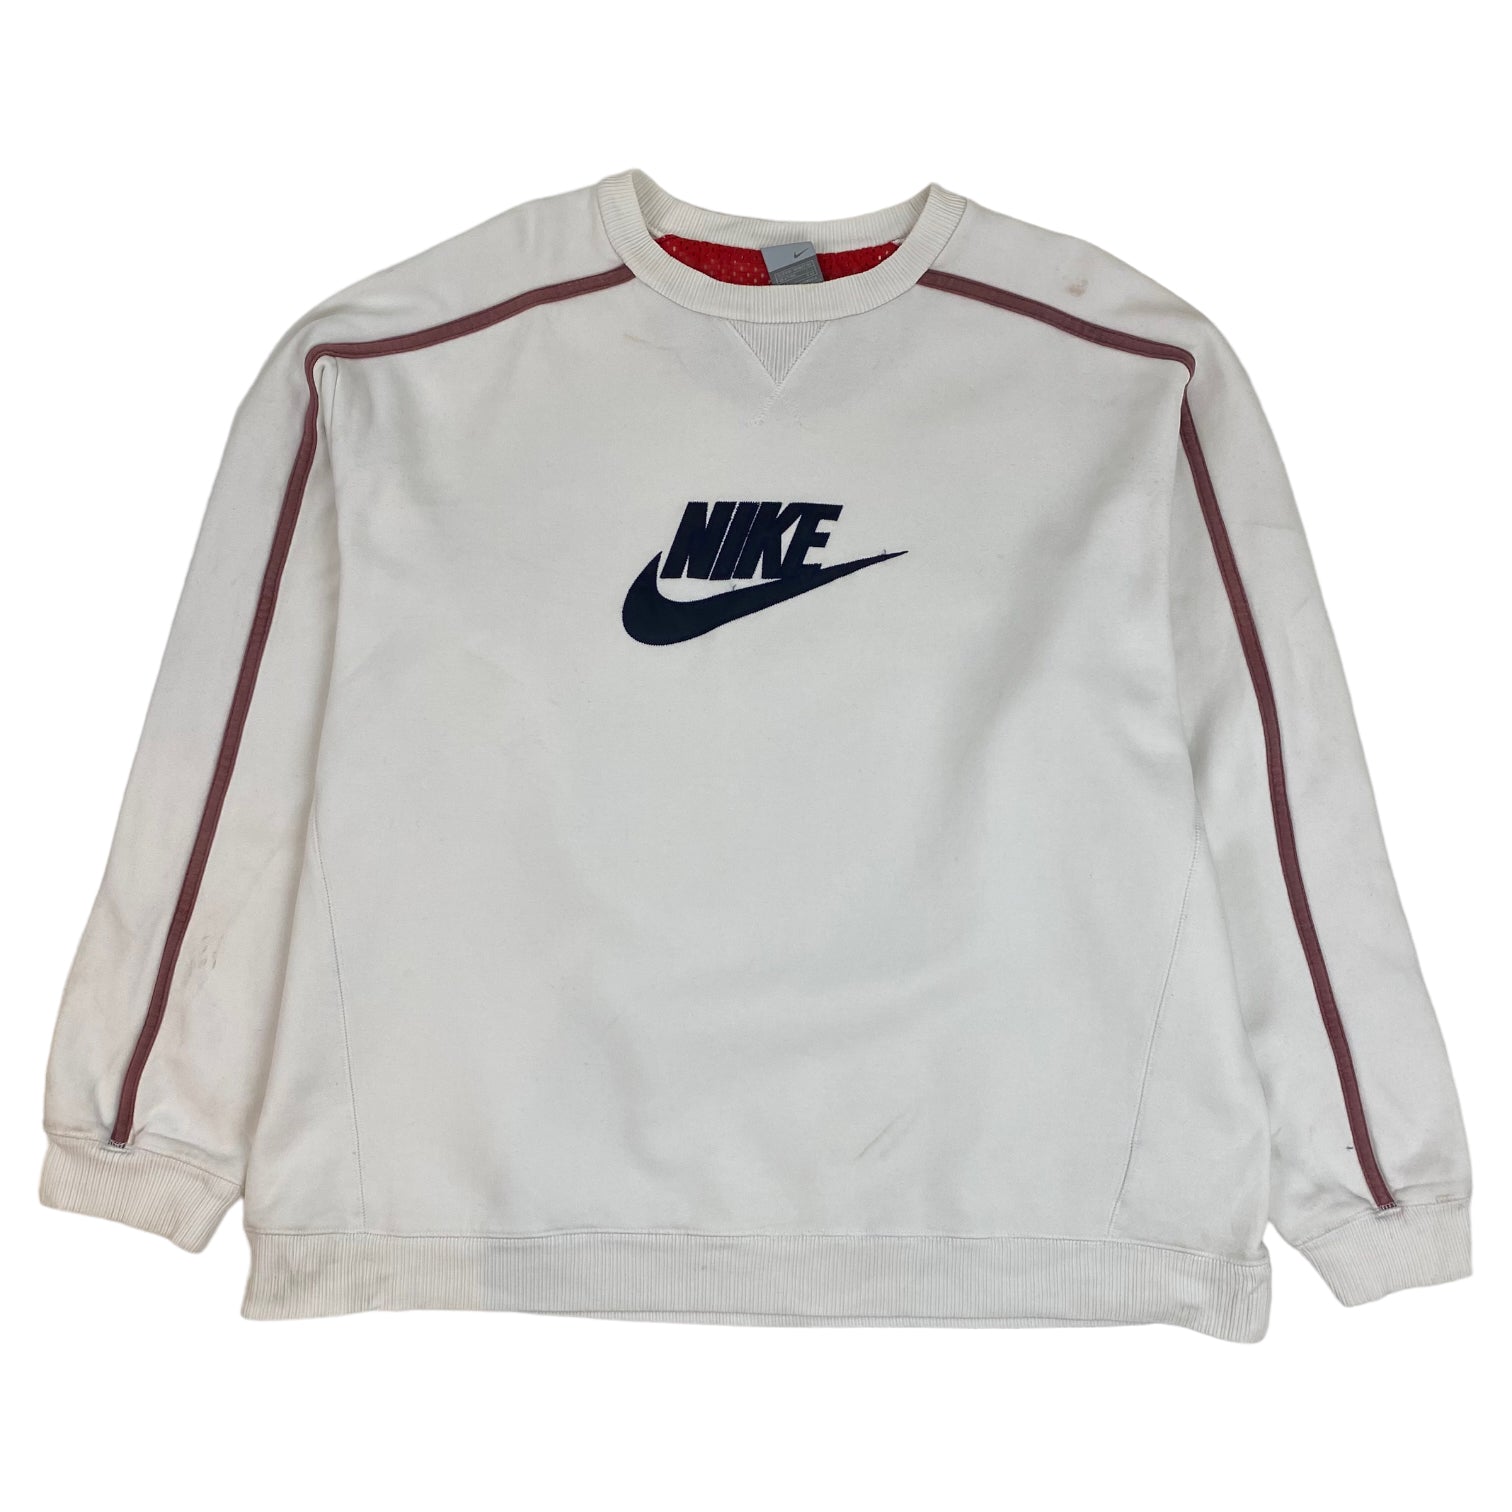 Vintage Nike Crewneck White